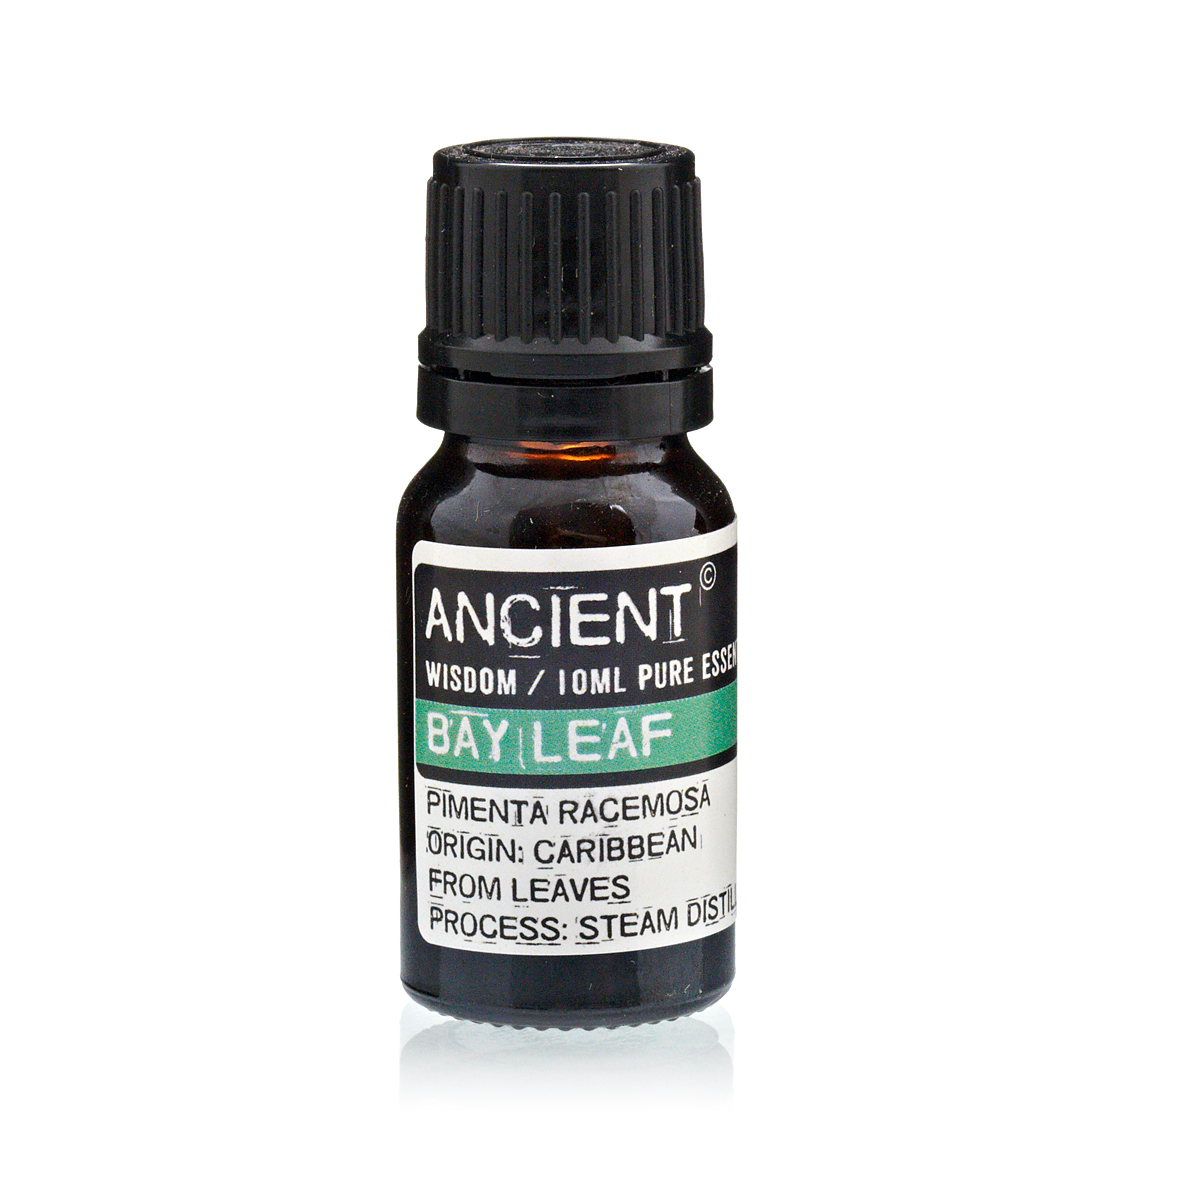 10 ml Bay Leaf Essential Oil